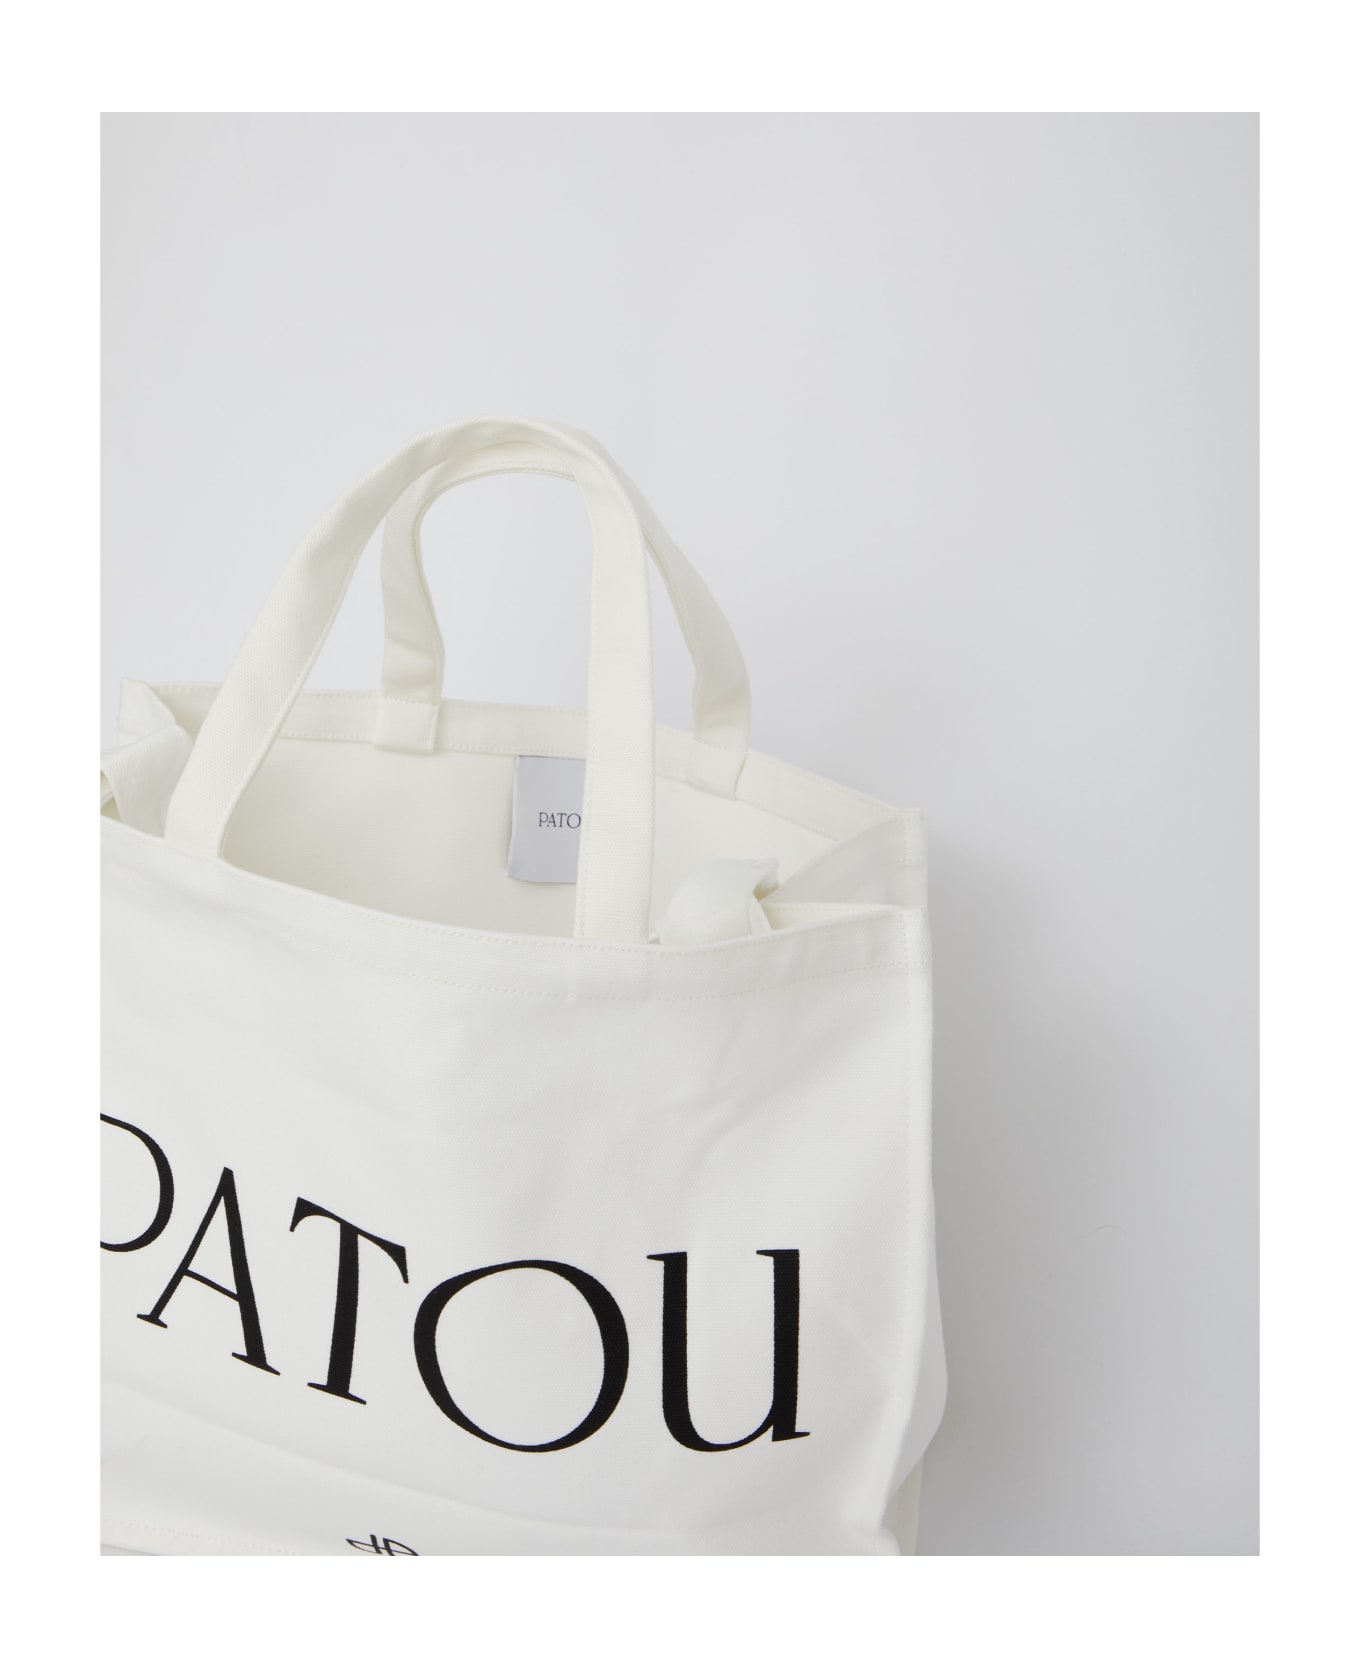 Patou Large Tote Bag - NEUTRALS